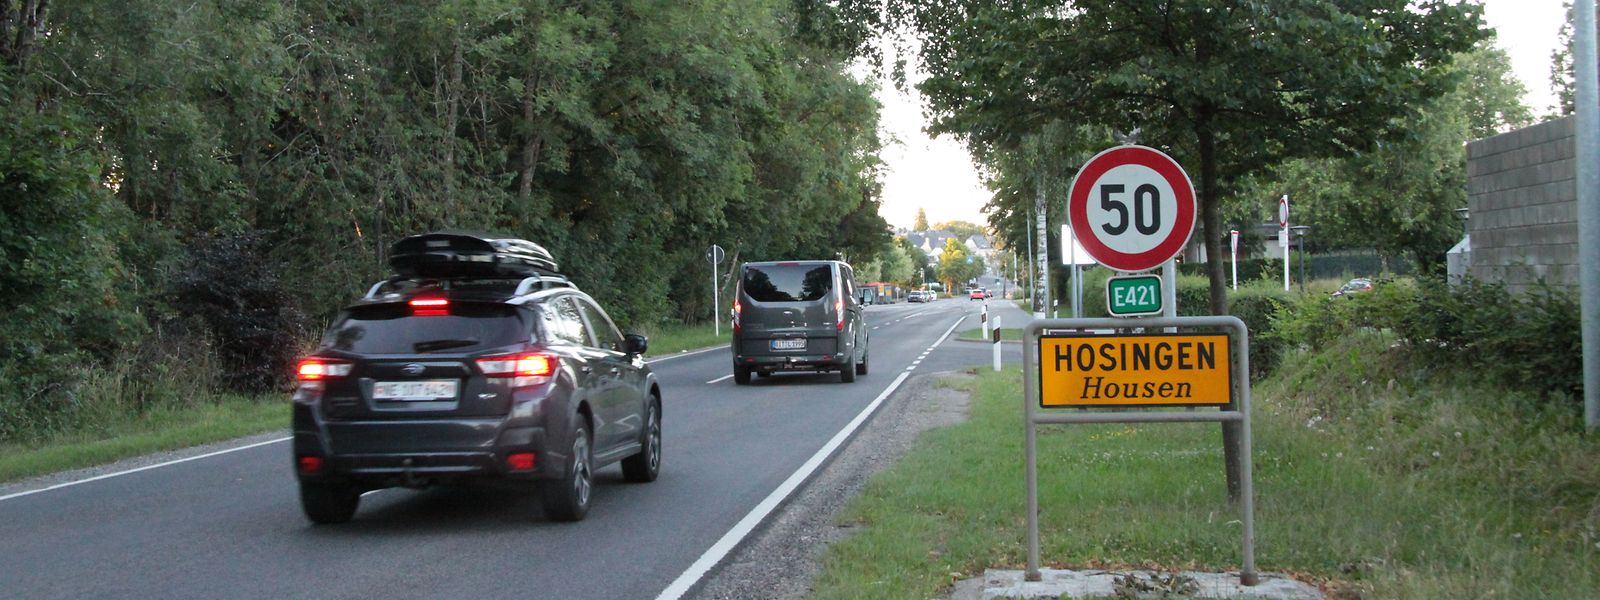 Die Umgestaltung der N7 und die Umgehungsstraße von Hosingen sollen zu einer deutlichen Verbesserung der Mobilität führen.